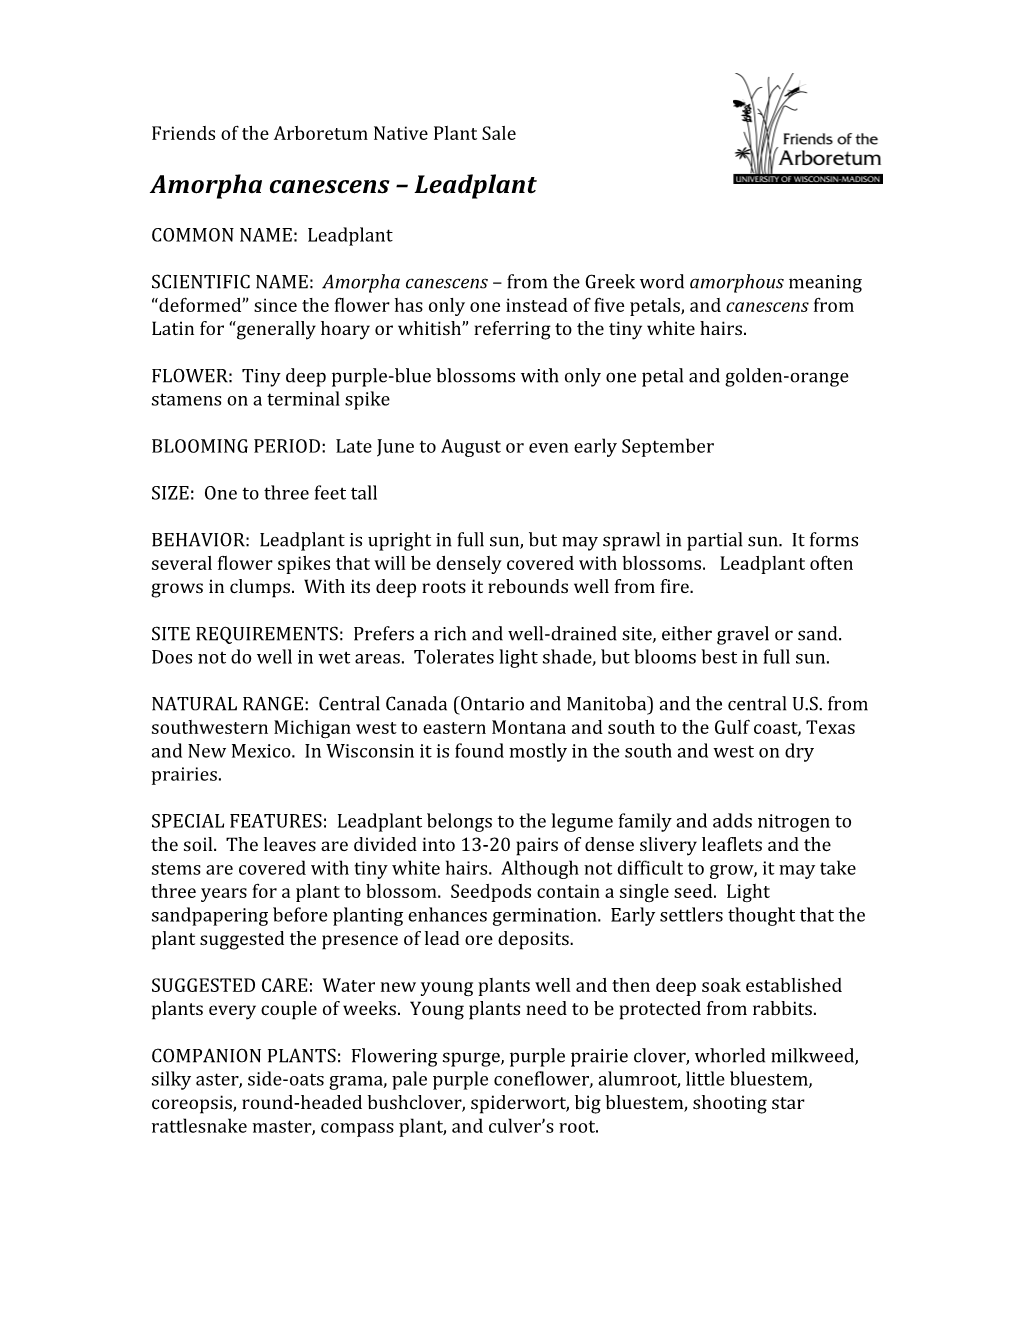 Amorpha Canescens – Leadplant